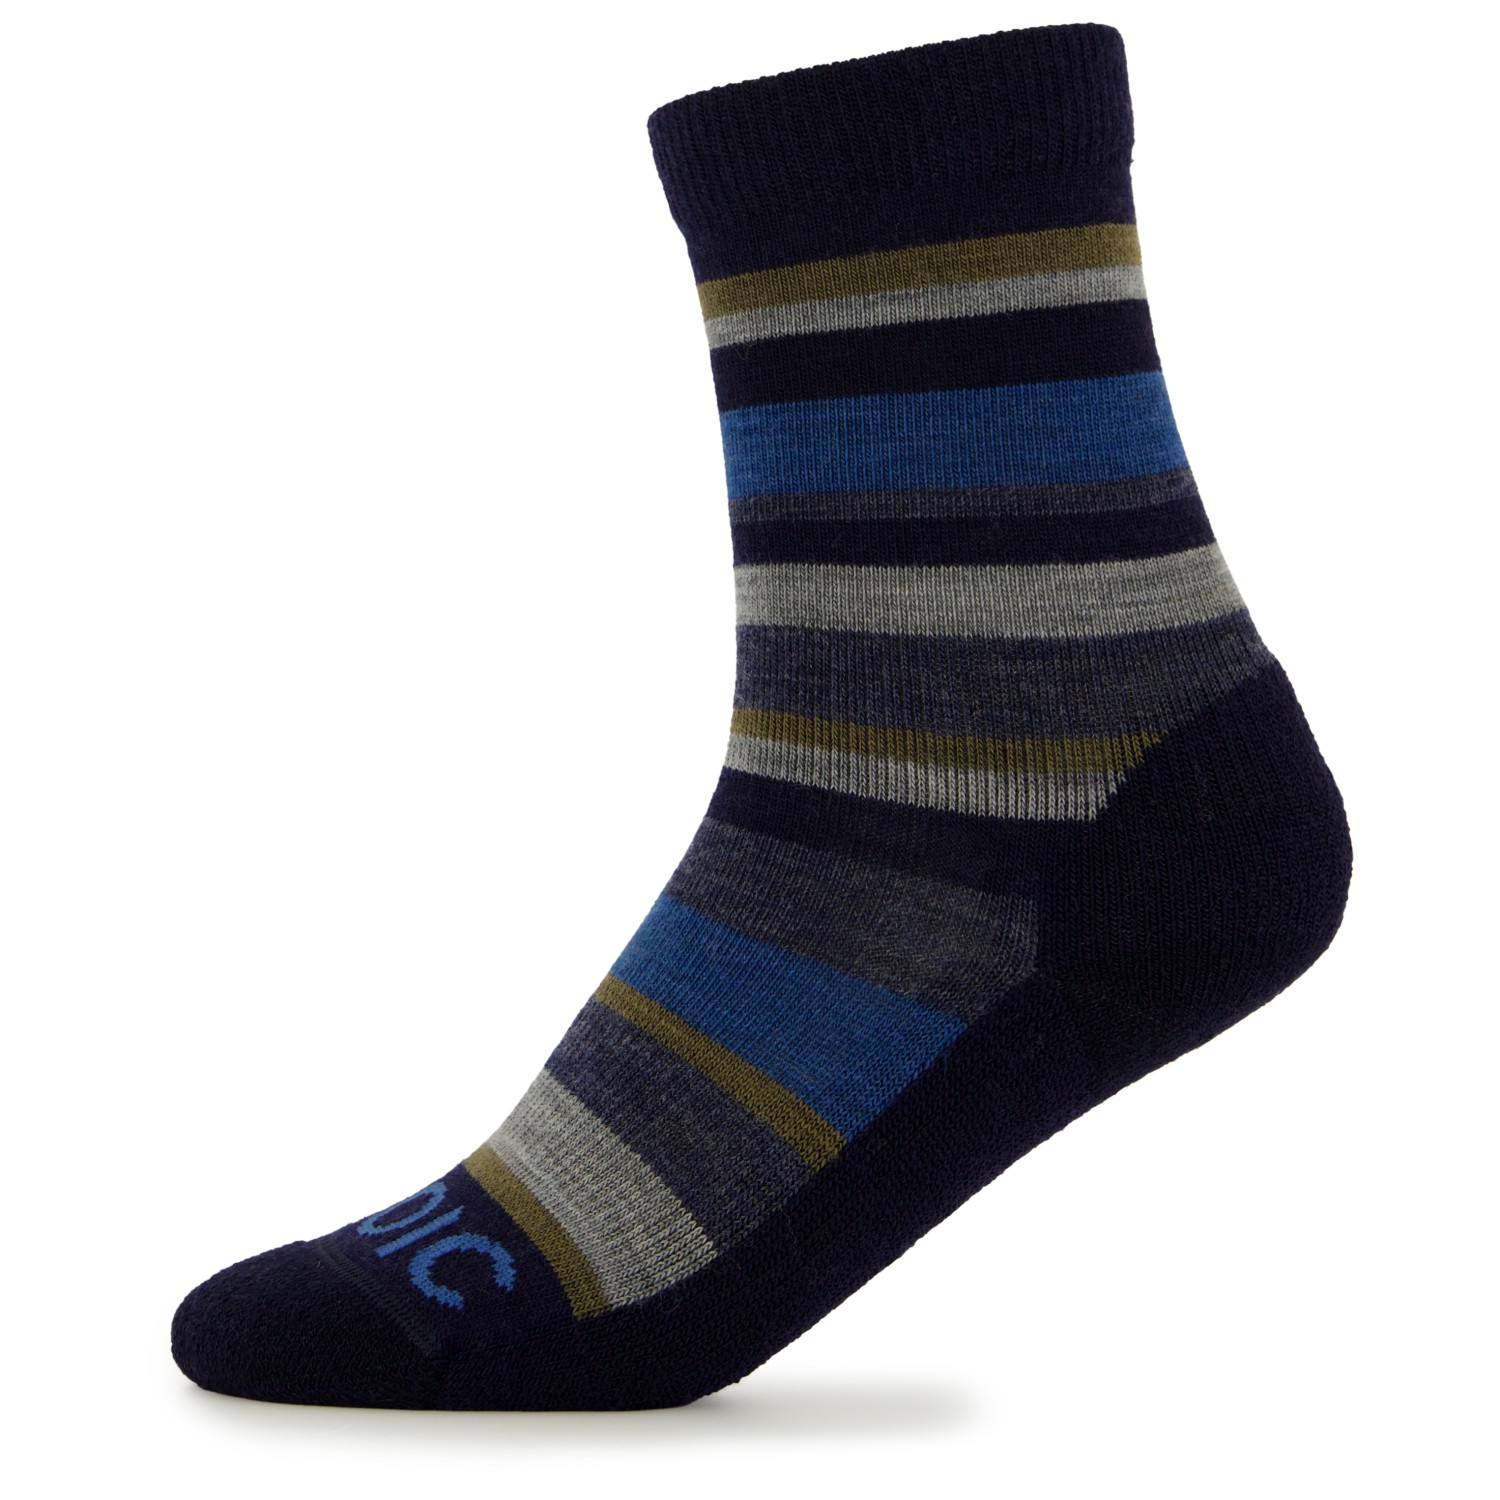 Походные носки Stoic Kid's Merino Trekking Crew Socks Stripes, цвет Navy/Olive